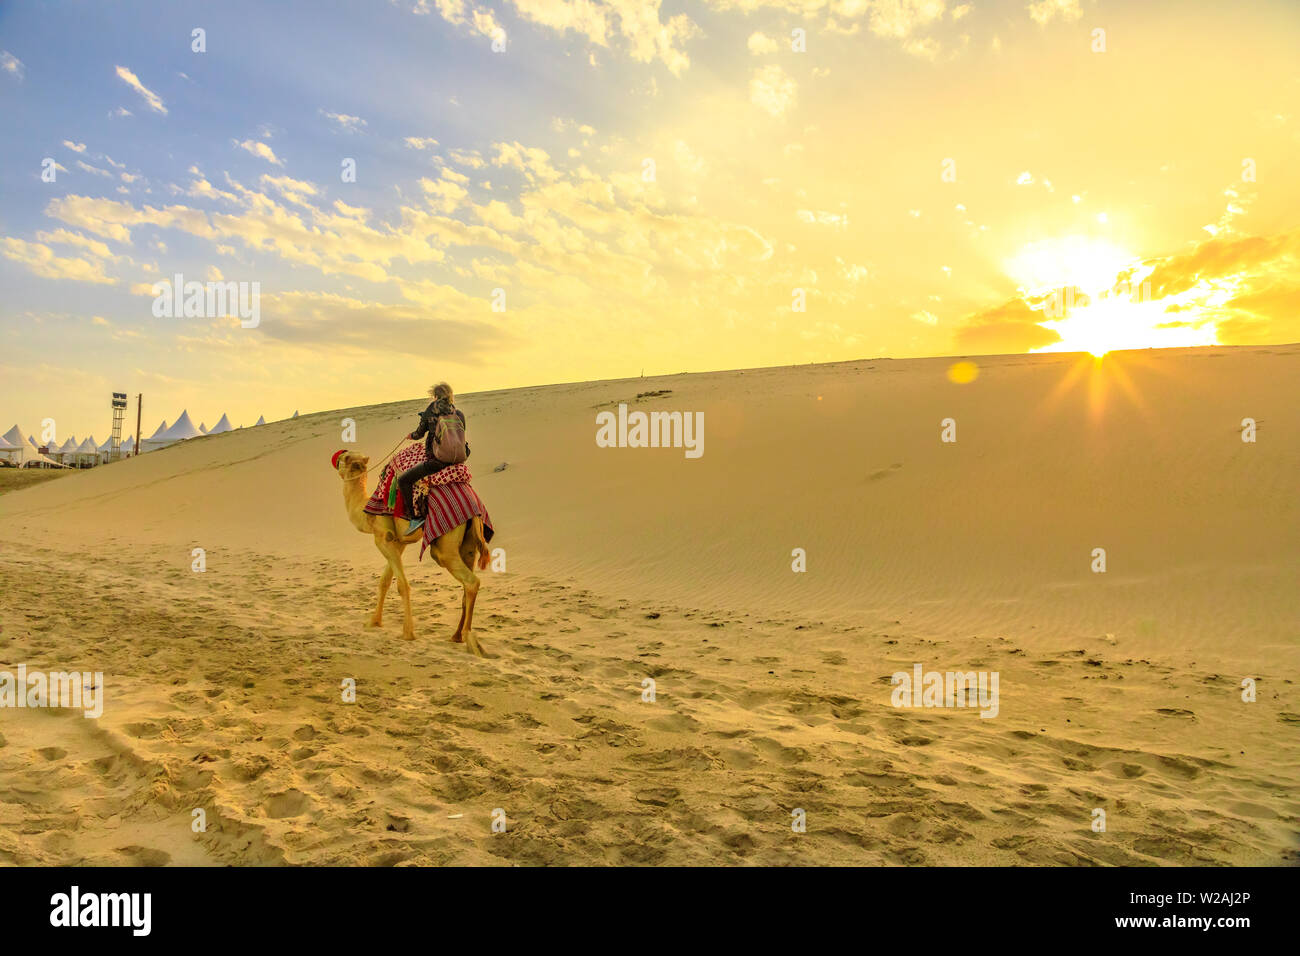 Safari dans le désert au Qatar. Meilleur homme monter un chameau sur les dunes de sable de plage de Khor al Udaid au golfe Persique. Touriste jouit d'chameau au coucher du soleil Banque D'Images